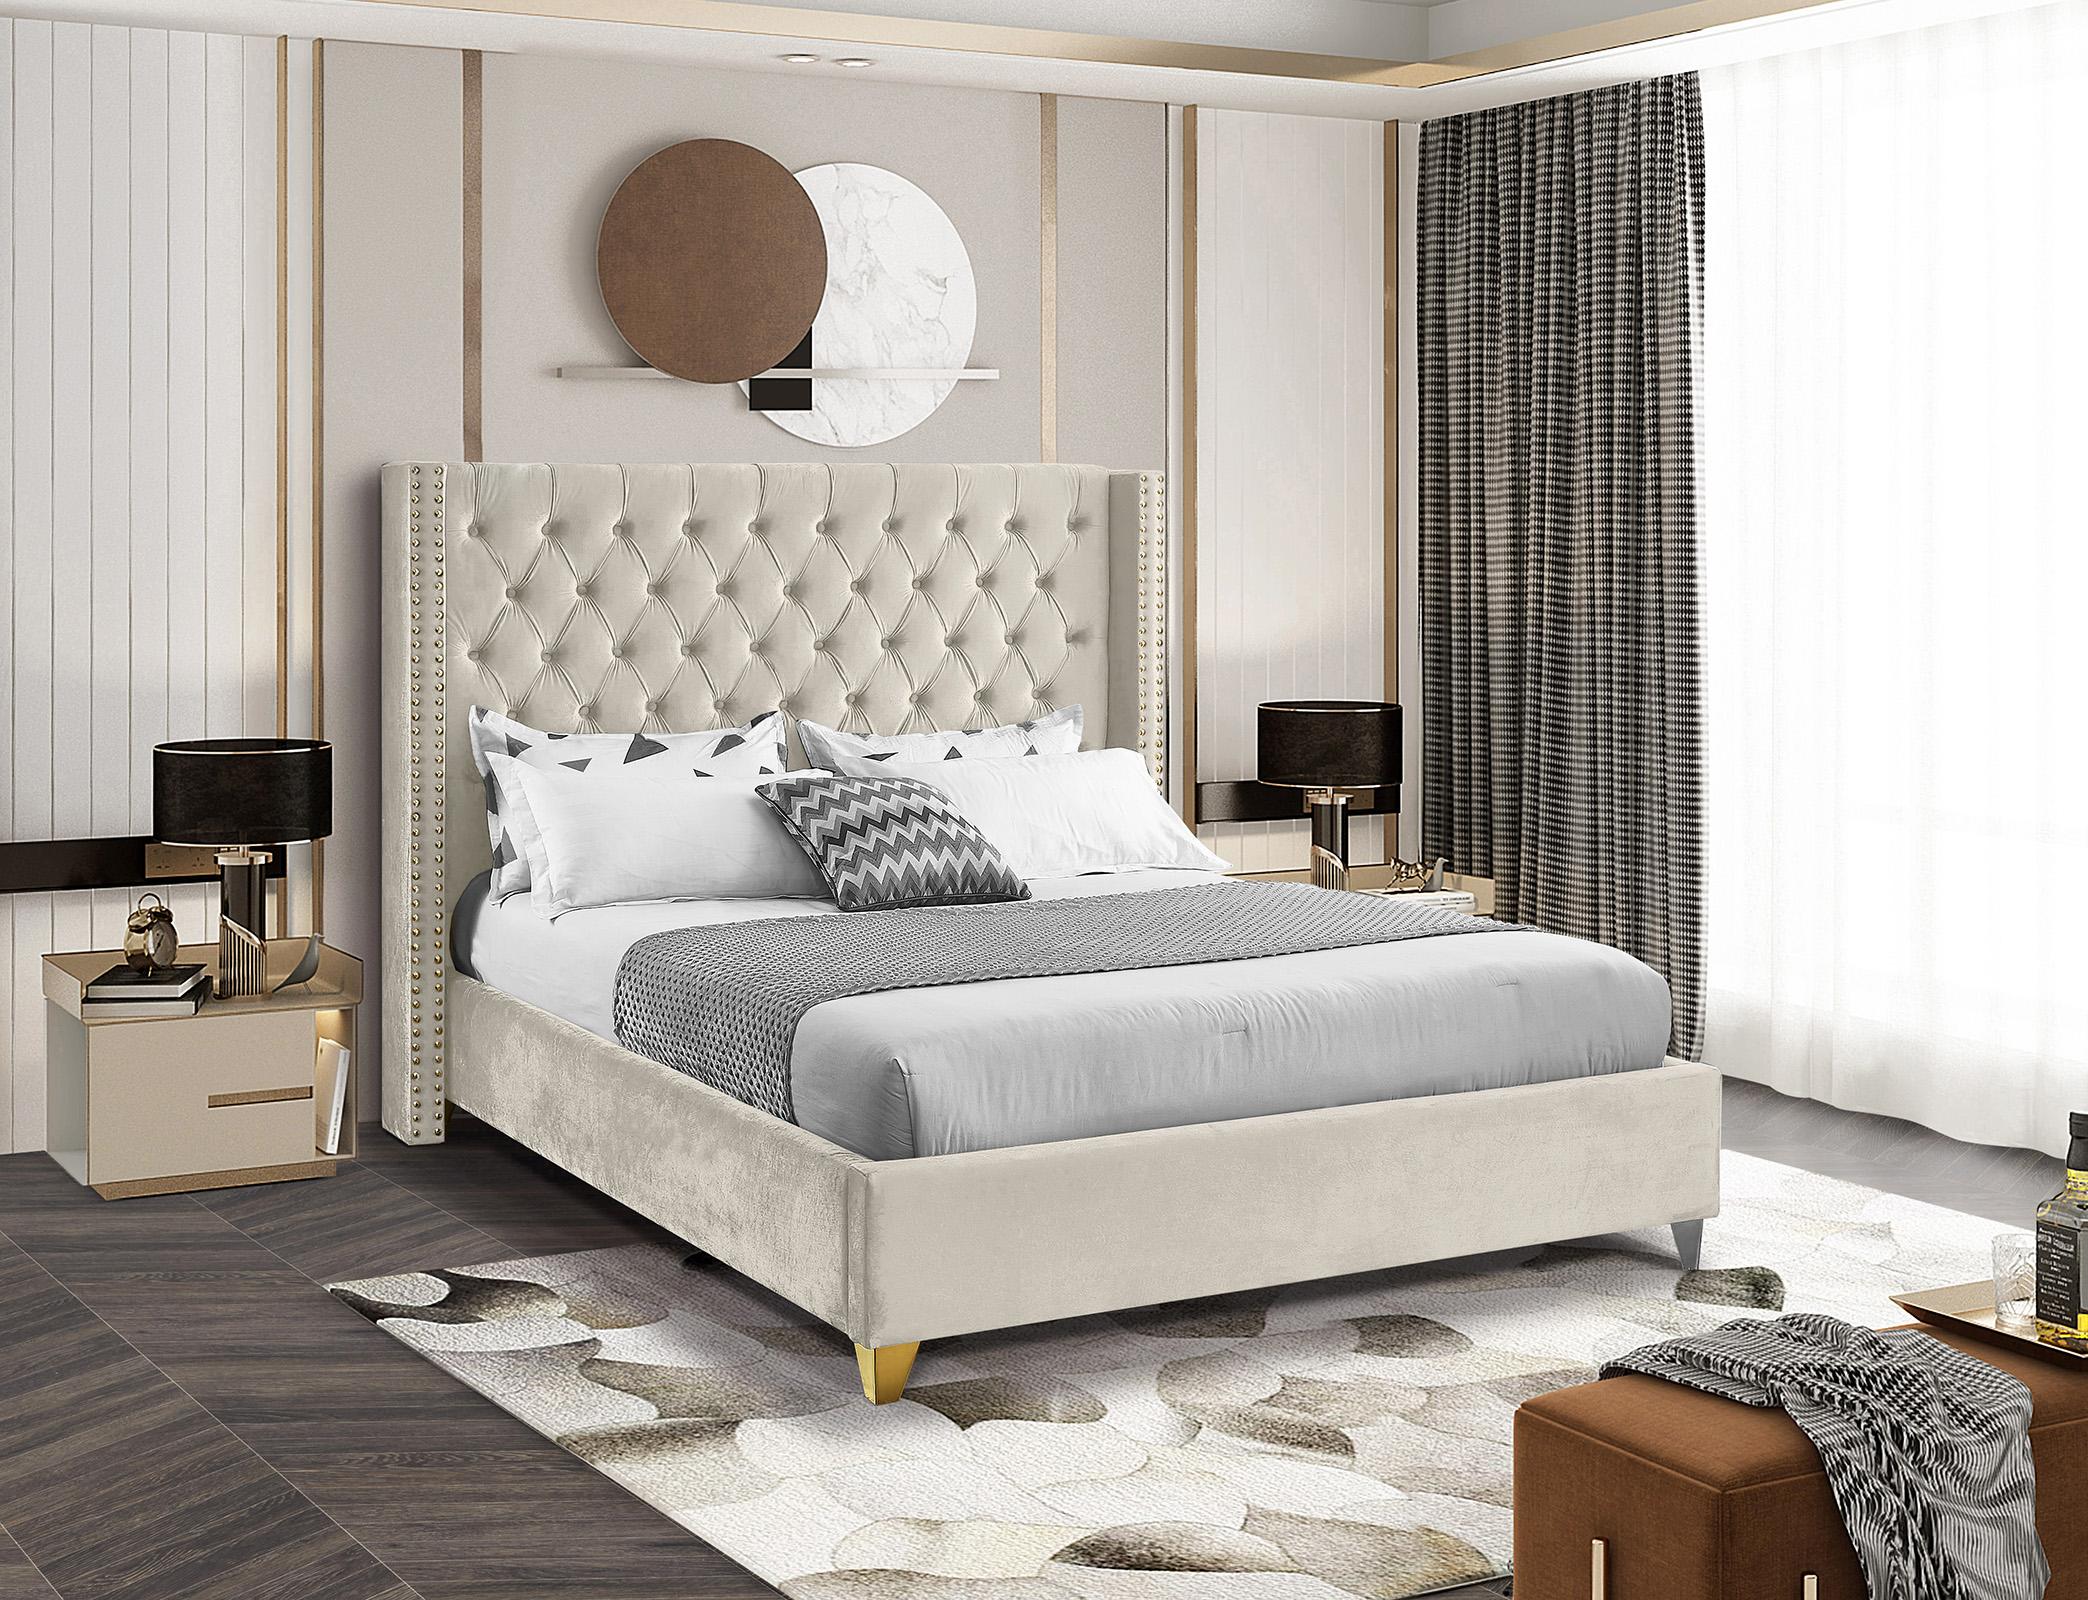 

    
BaroloCream-K Meridian Furniture Platform Bed
